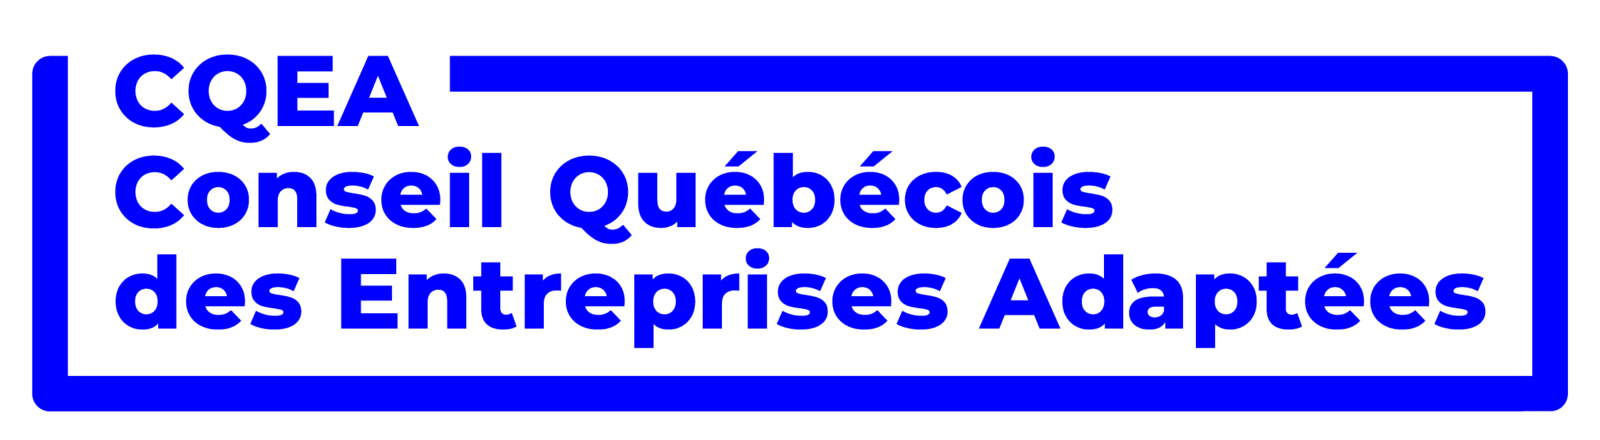 Conseil québécois des entreprises adaptées (CQEA)